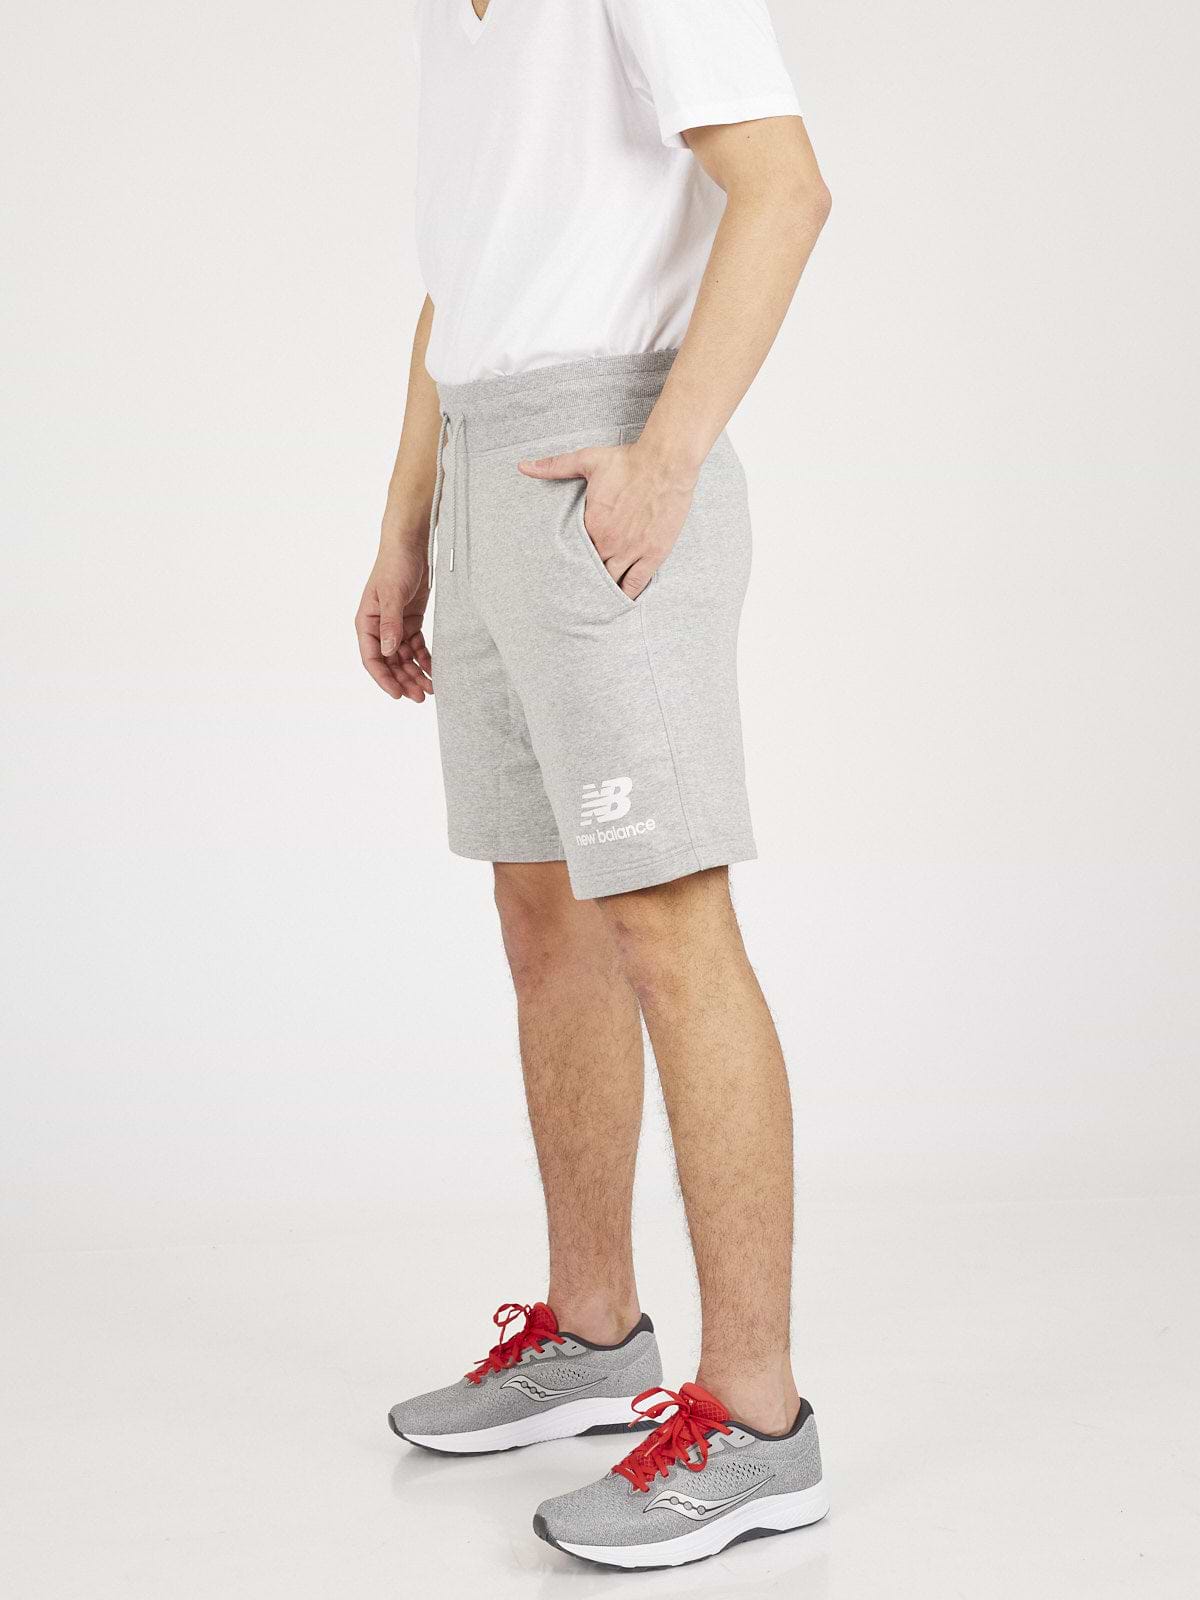 מכנסיים קצרים עם הדפס לוגו- New Balance|ניו בלאנס